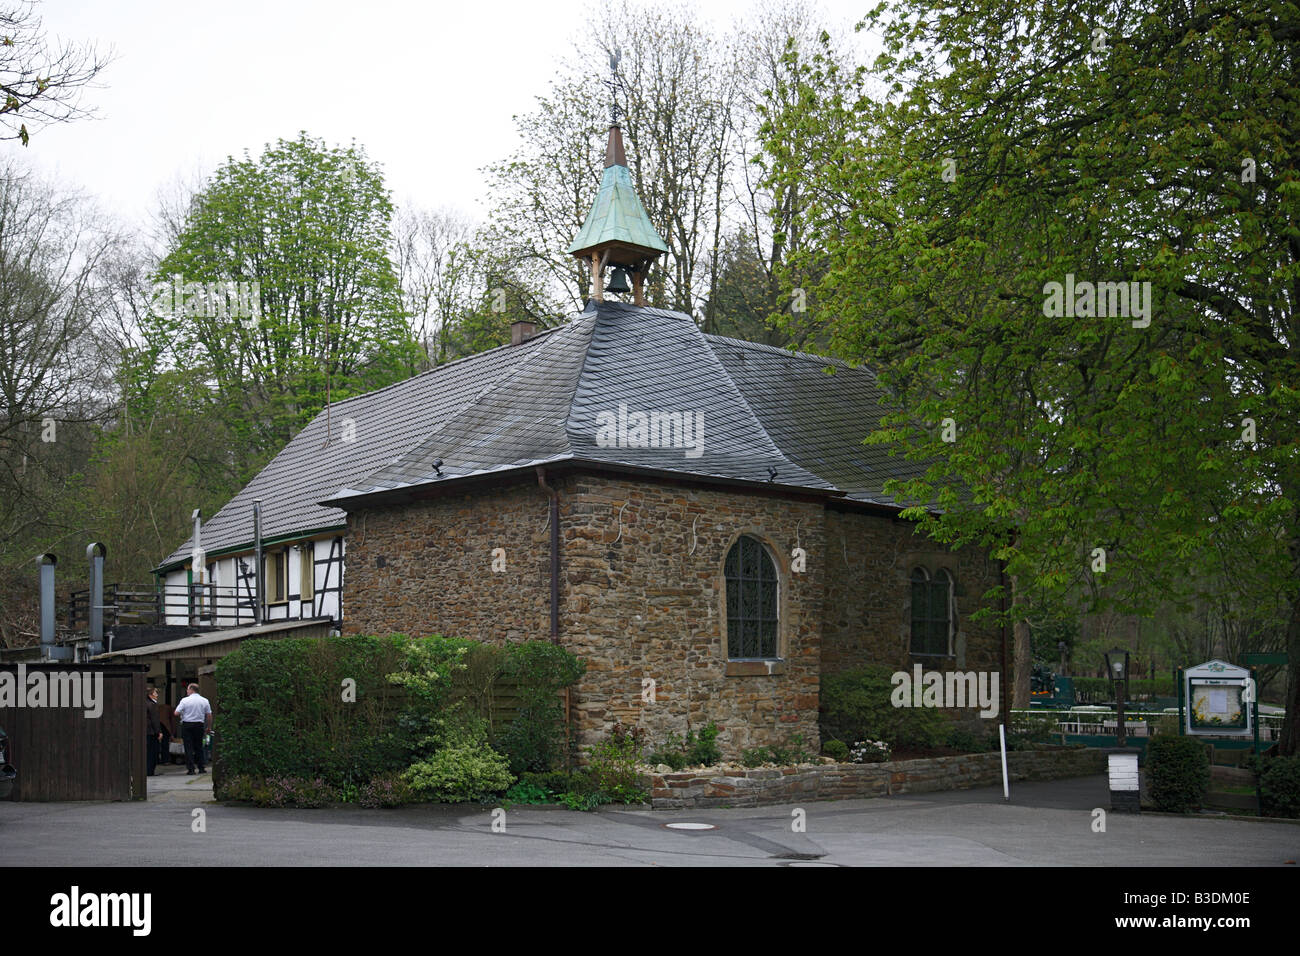 Kapelle des Heiligen Egidio, Klusenkapelle Sankt Egidio in Essen-Stadtwald, Essen, Ruhrgebiet, NRW Foto Stock